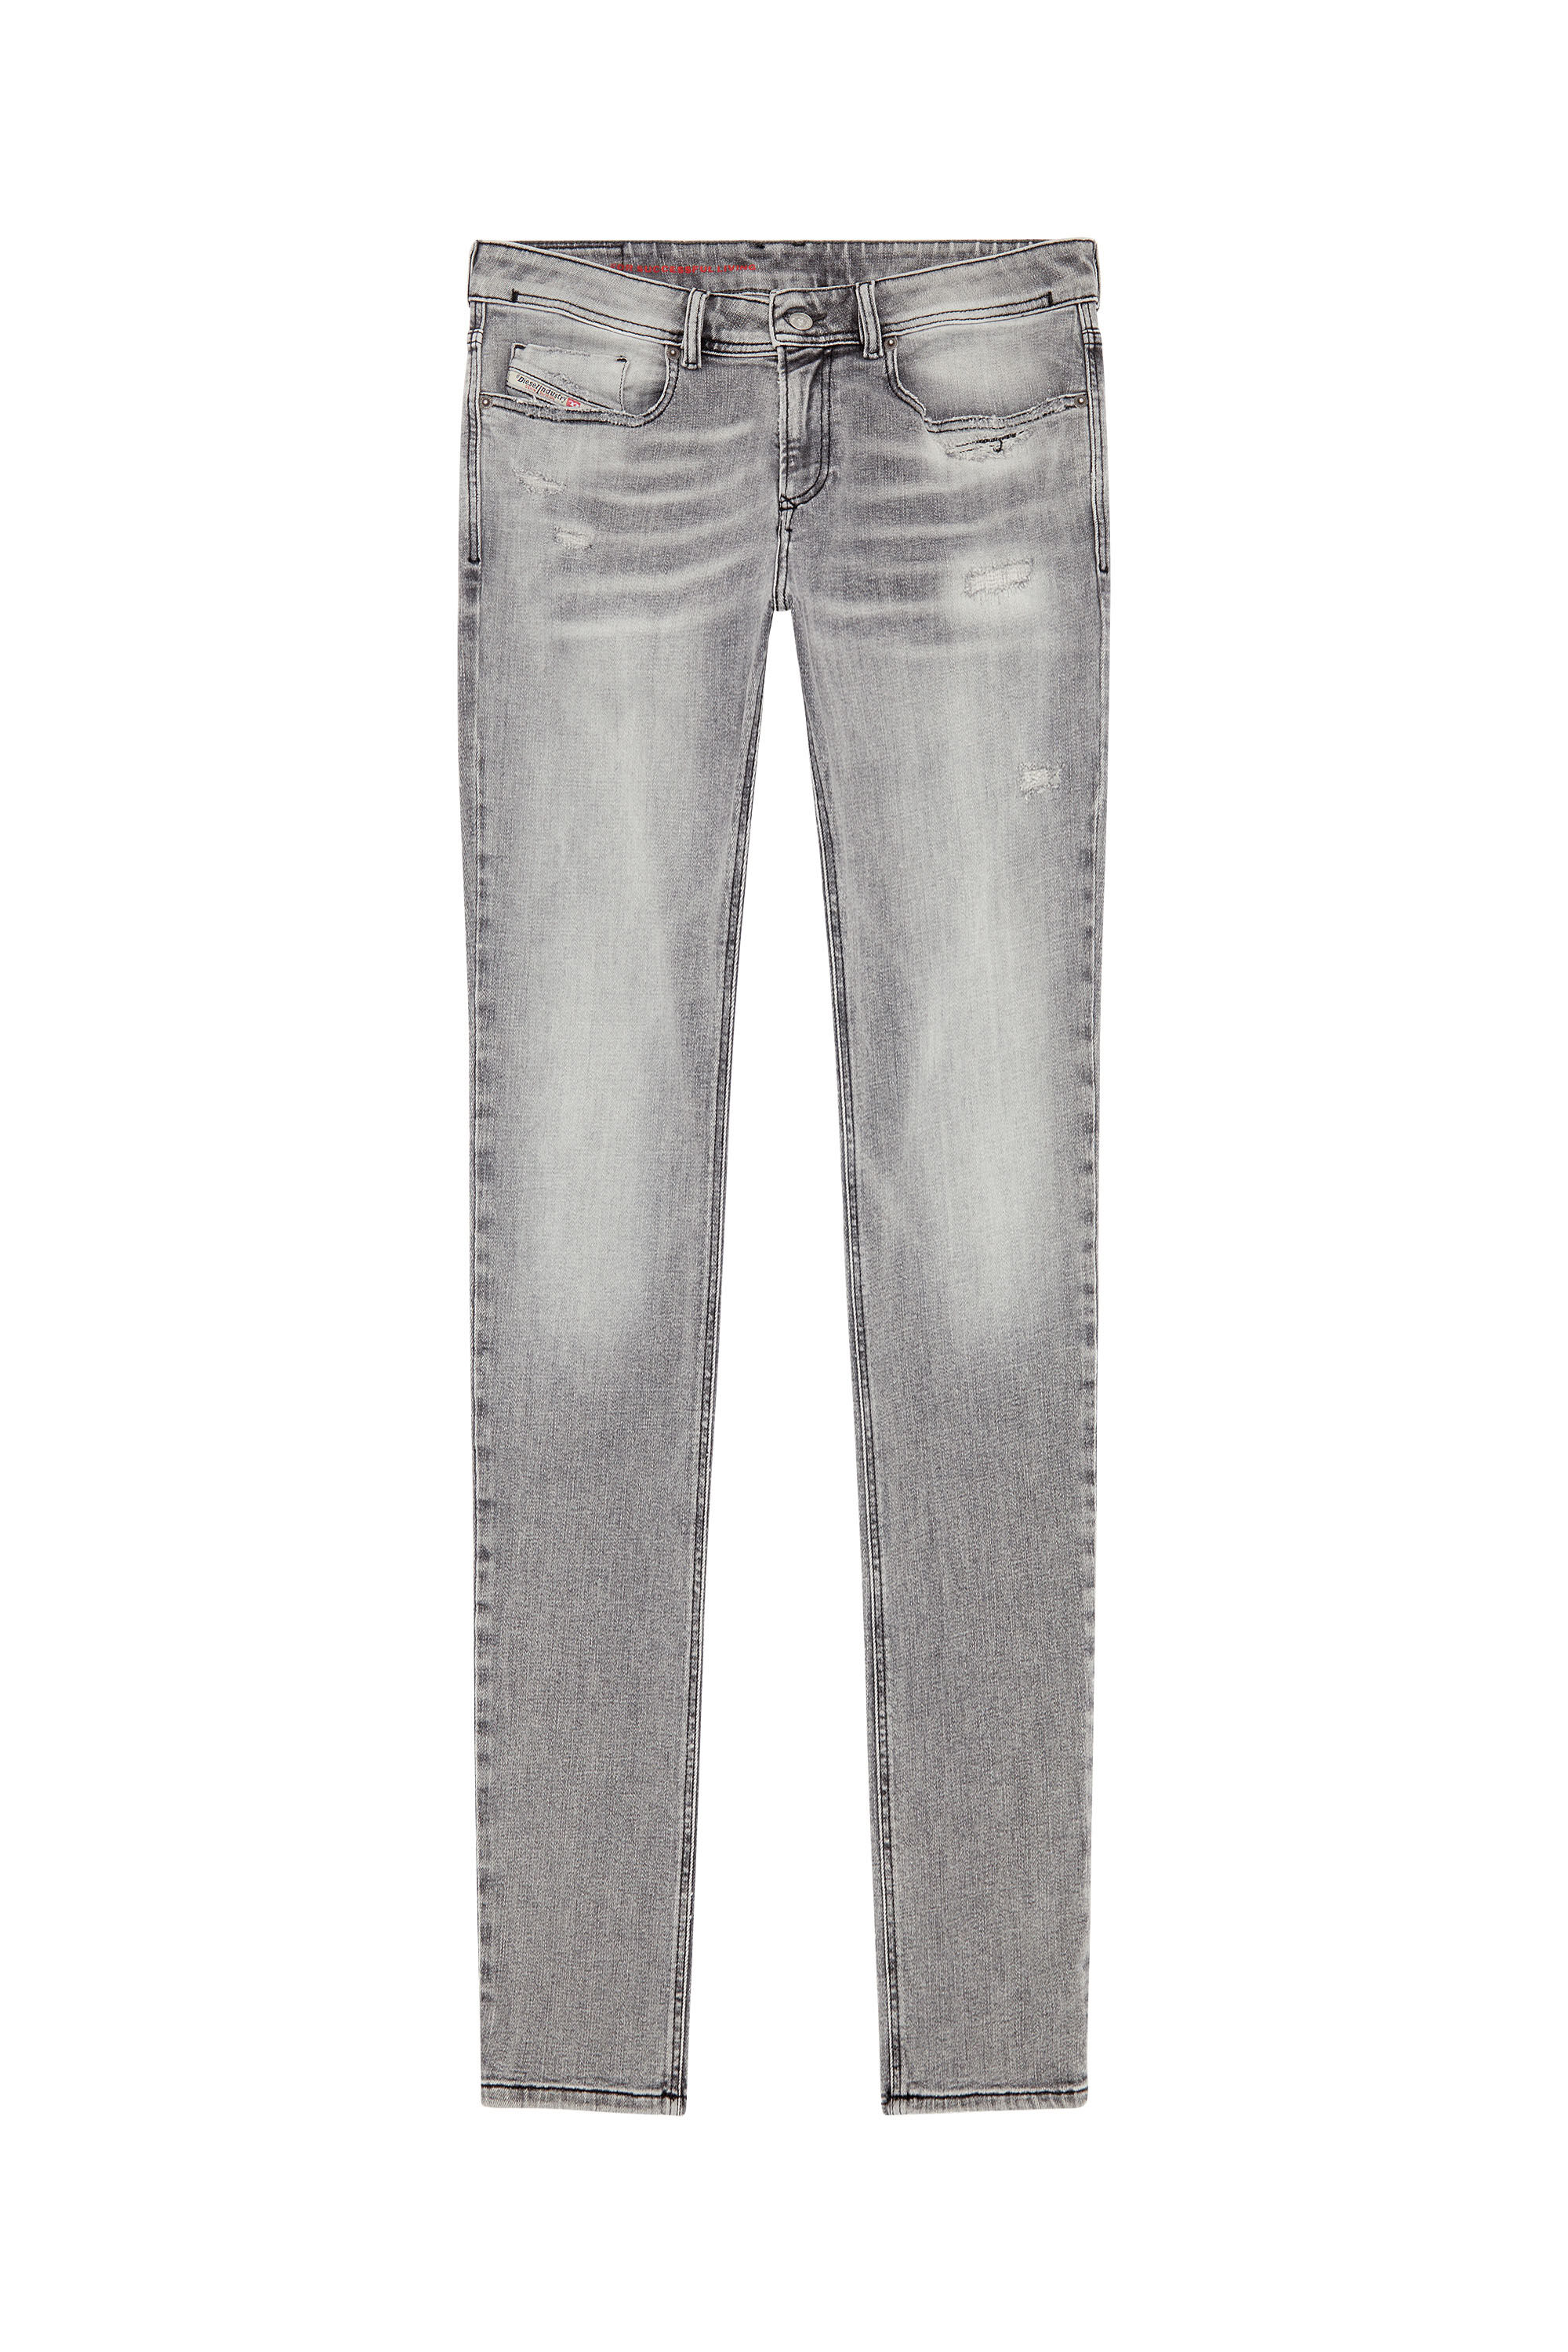 Diesel - Skinny Jeans 1979 Sleenker E9B97, Black/Dark grey - Image 2